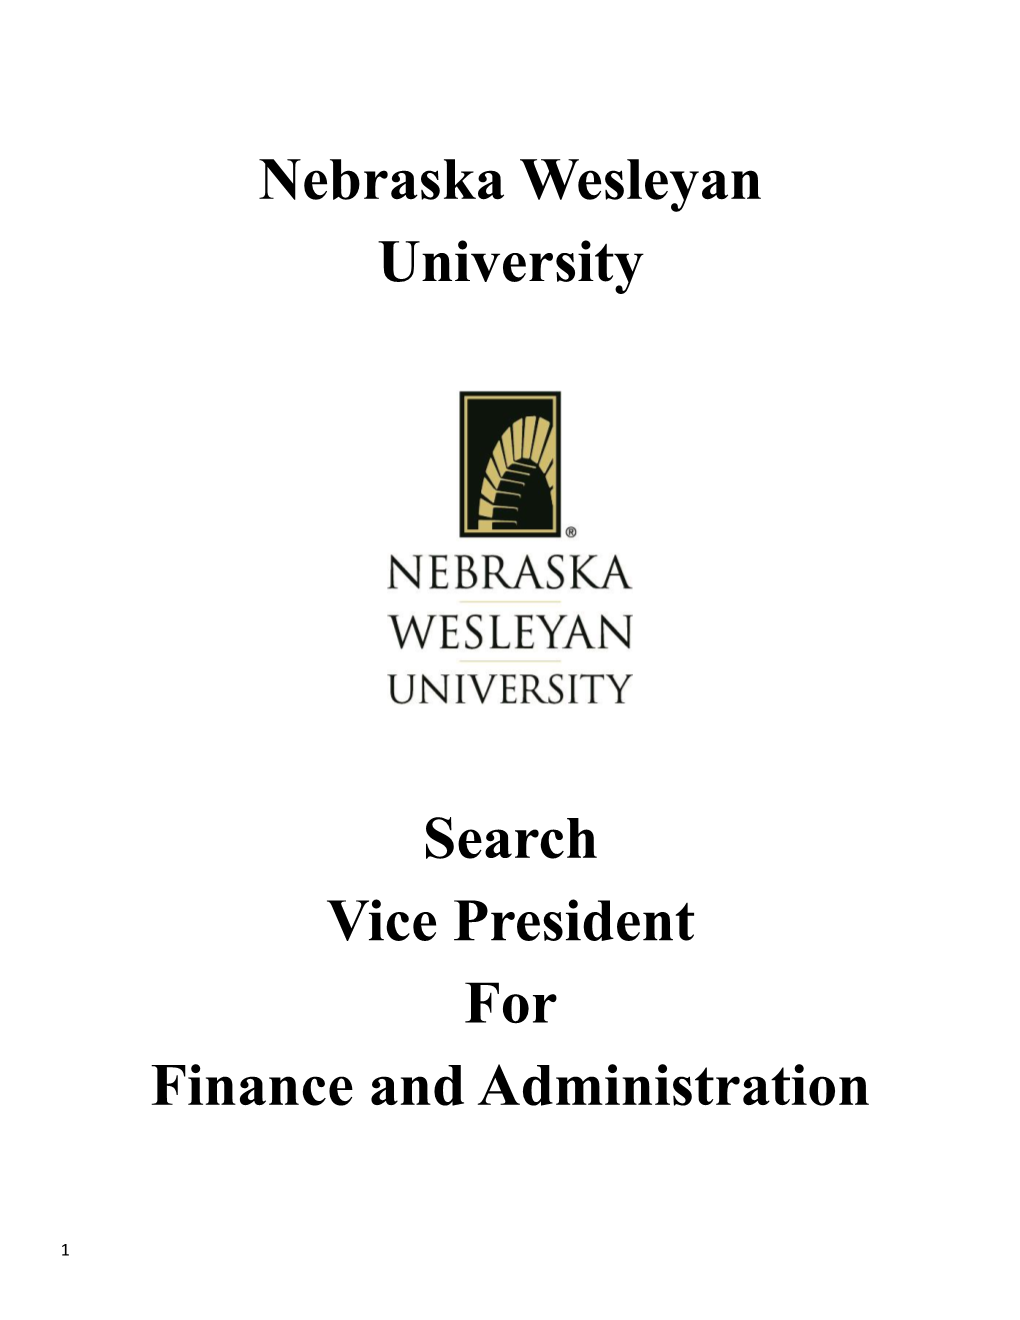 Nebraska Wesleyan University Search Vice President for Finance And